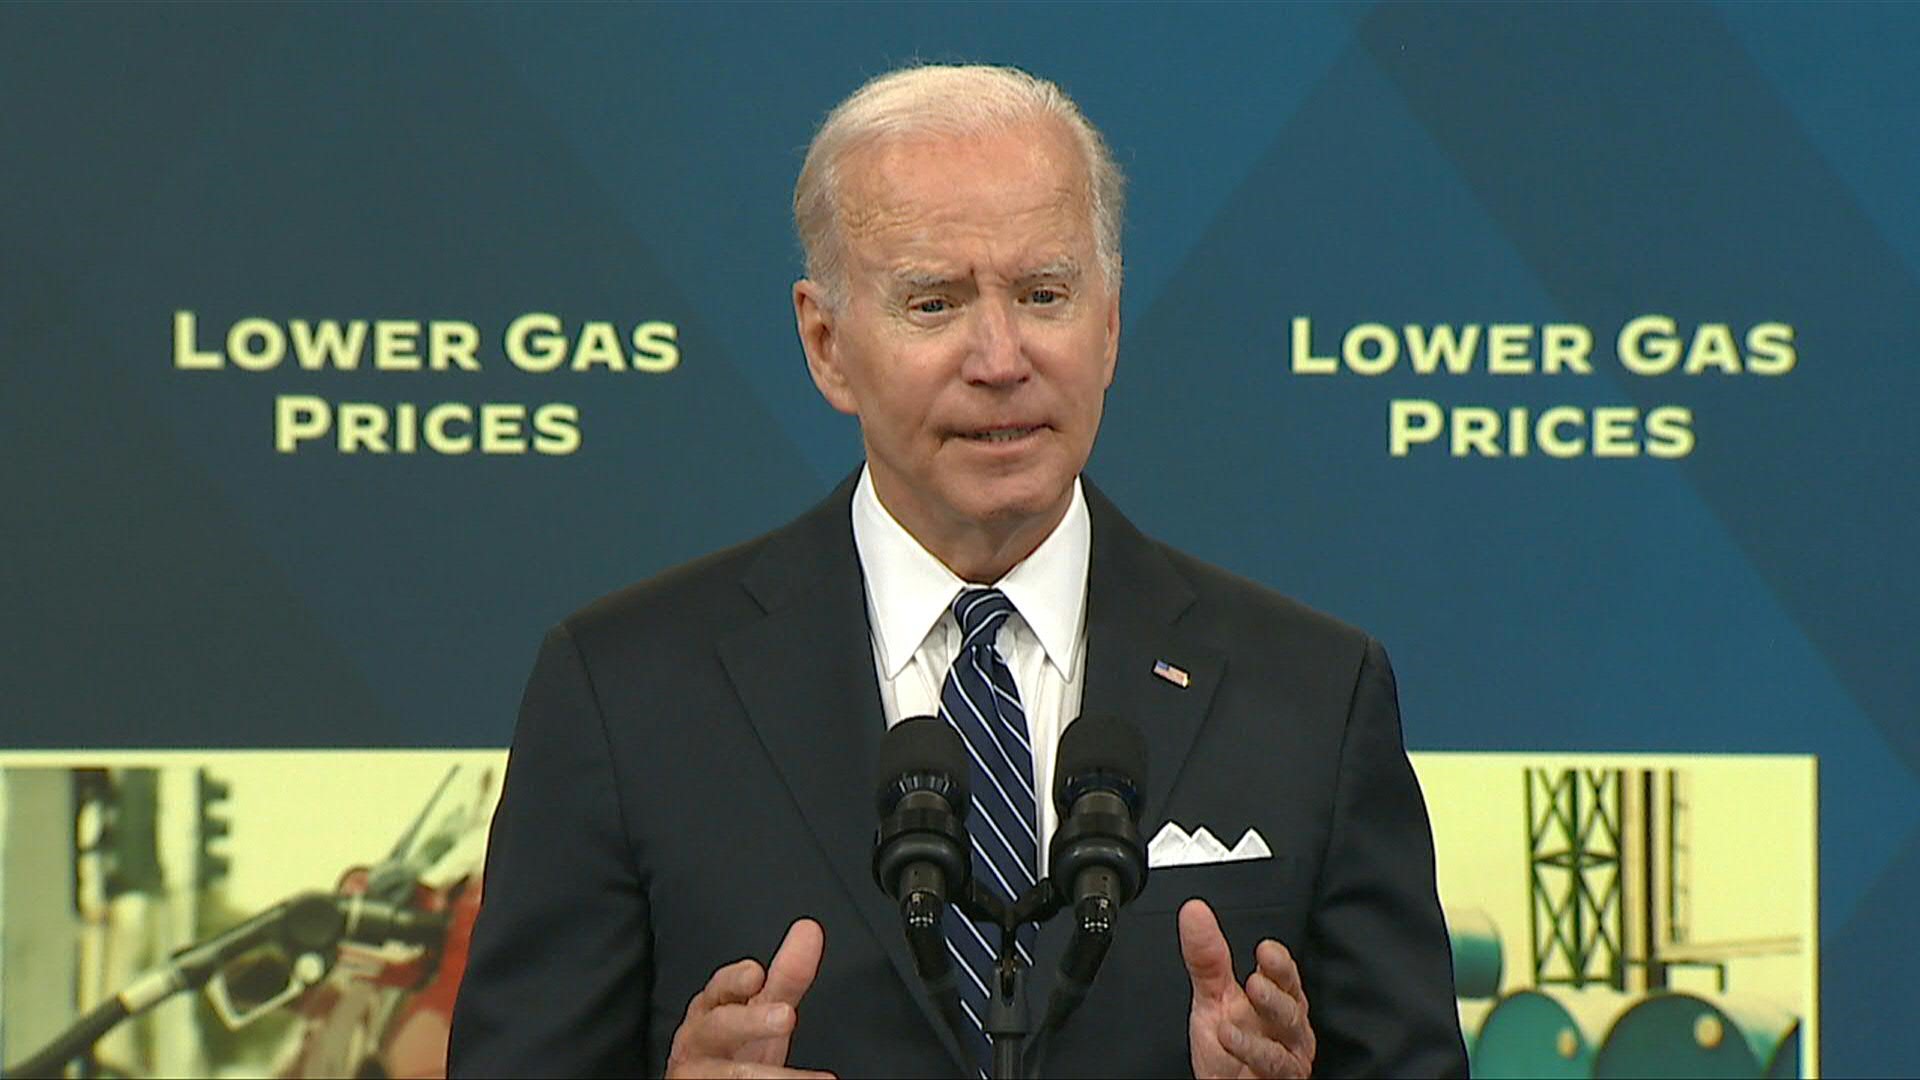 El presidente Joe Biden defendió este miércoles su estrategia ante los precios récord de la gasolina, que implica suspender por tres meses un impuesto federal sobre los precios del carburante, que se han disparado y molestan a los estadounidenses, a pocos meses de las elecciones legislativas de mitad de mandato.